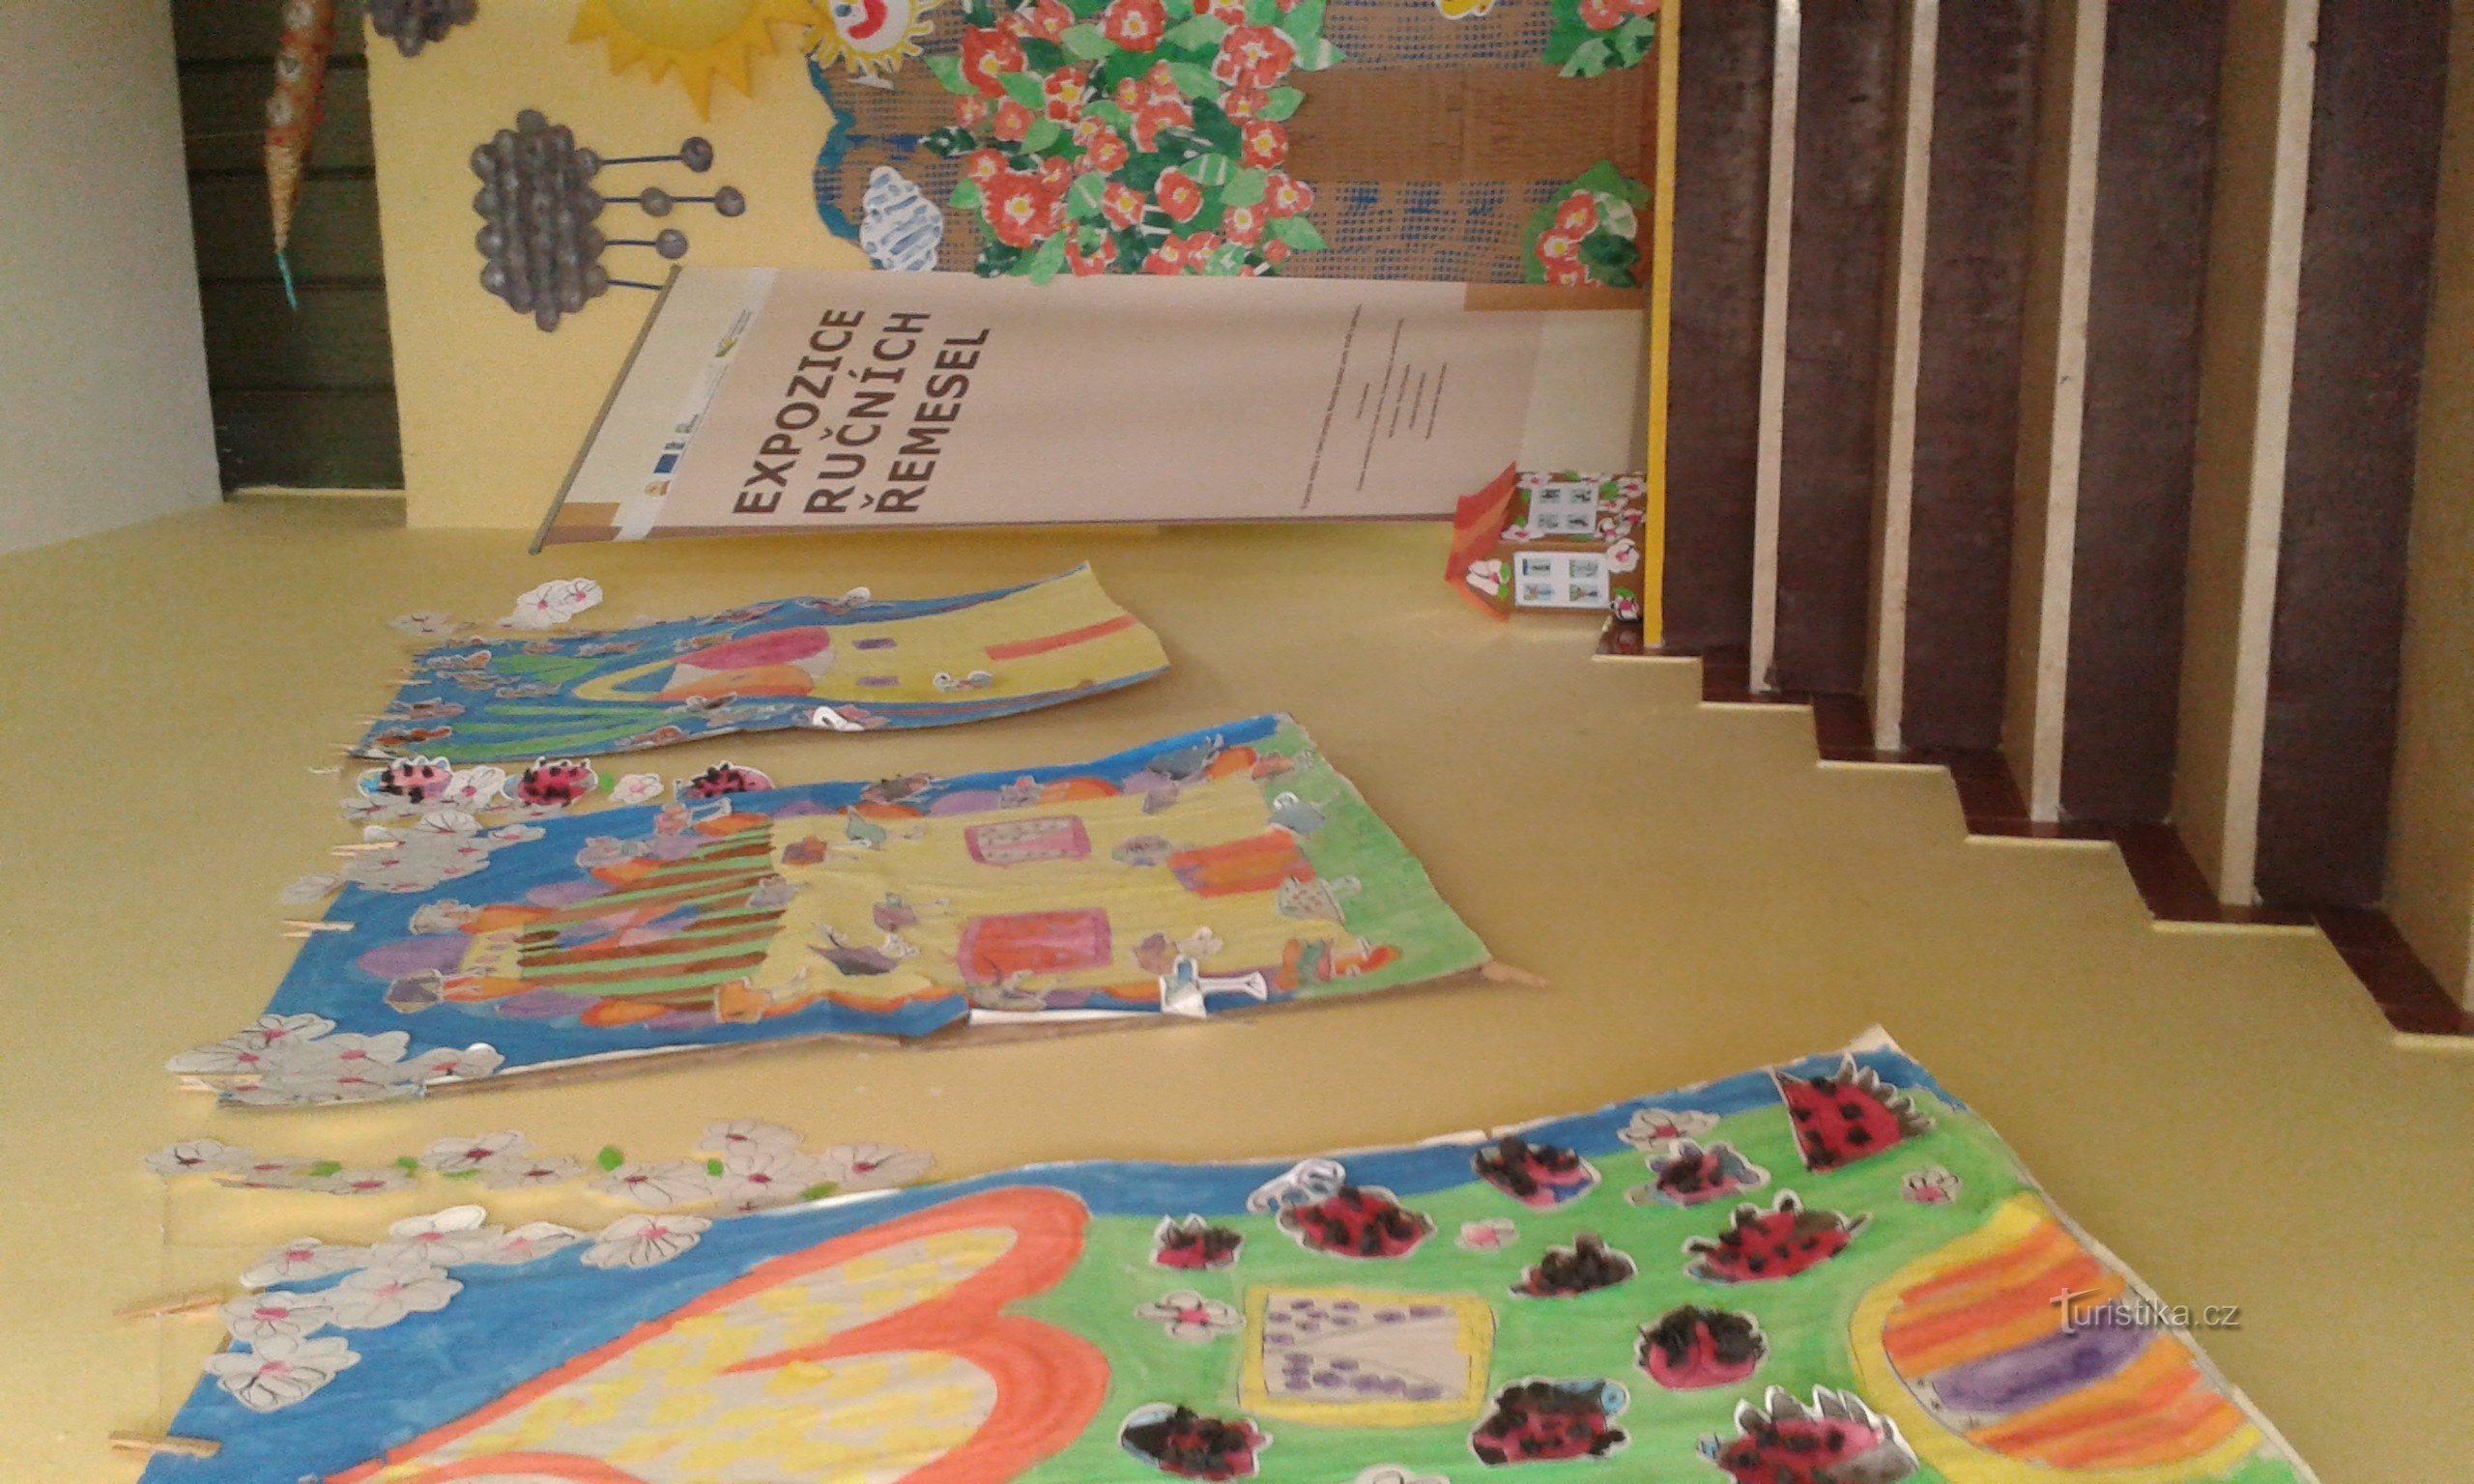 hodnik ukrašen dječjim crtežima